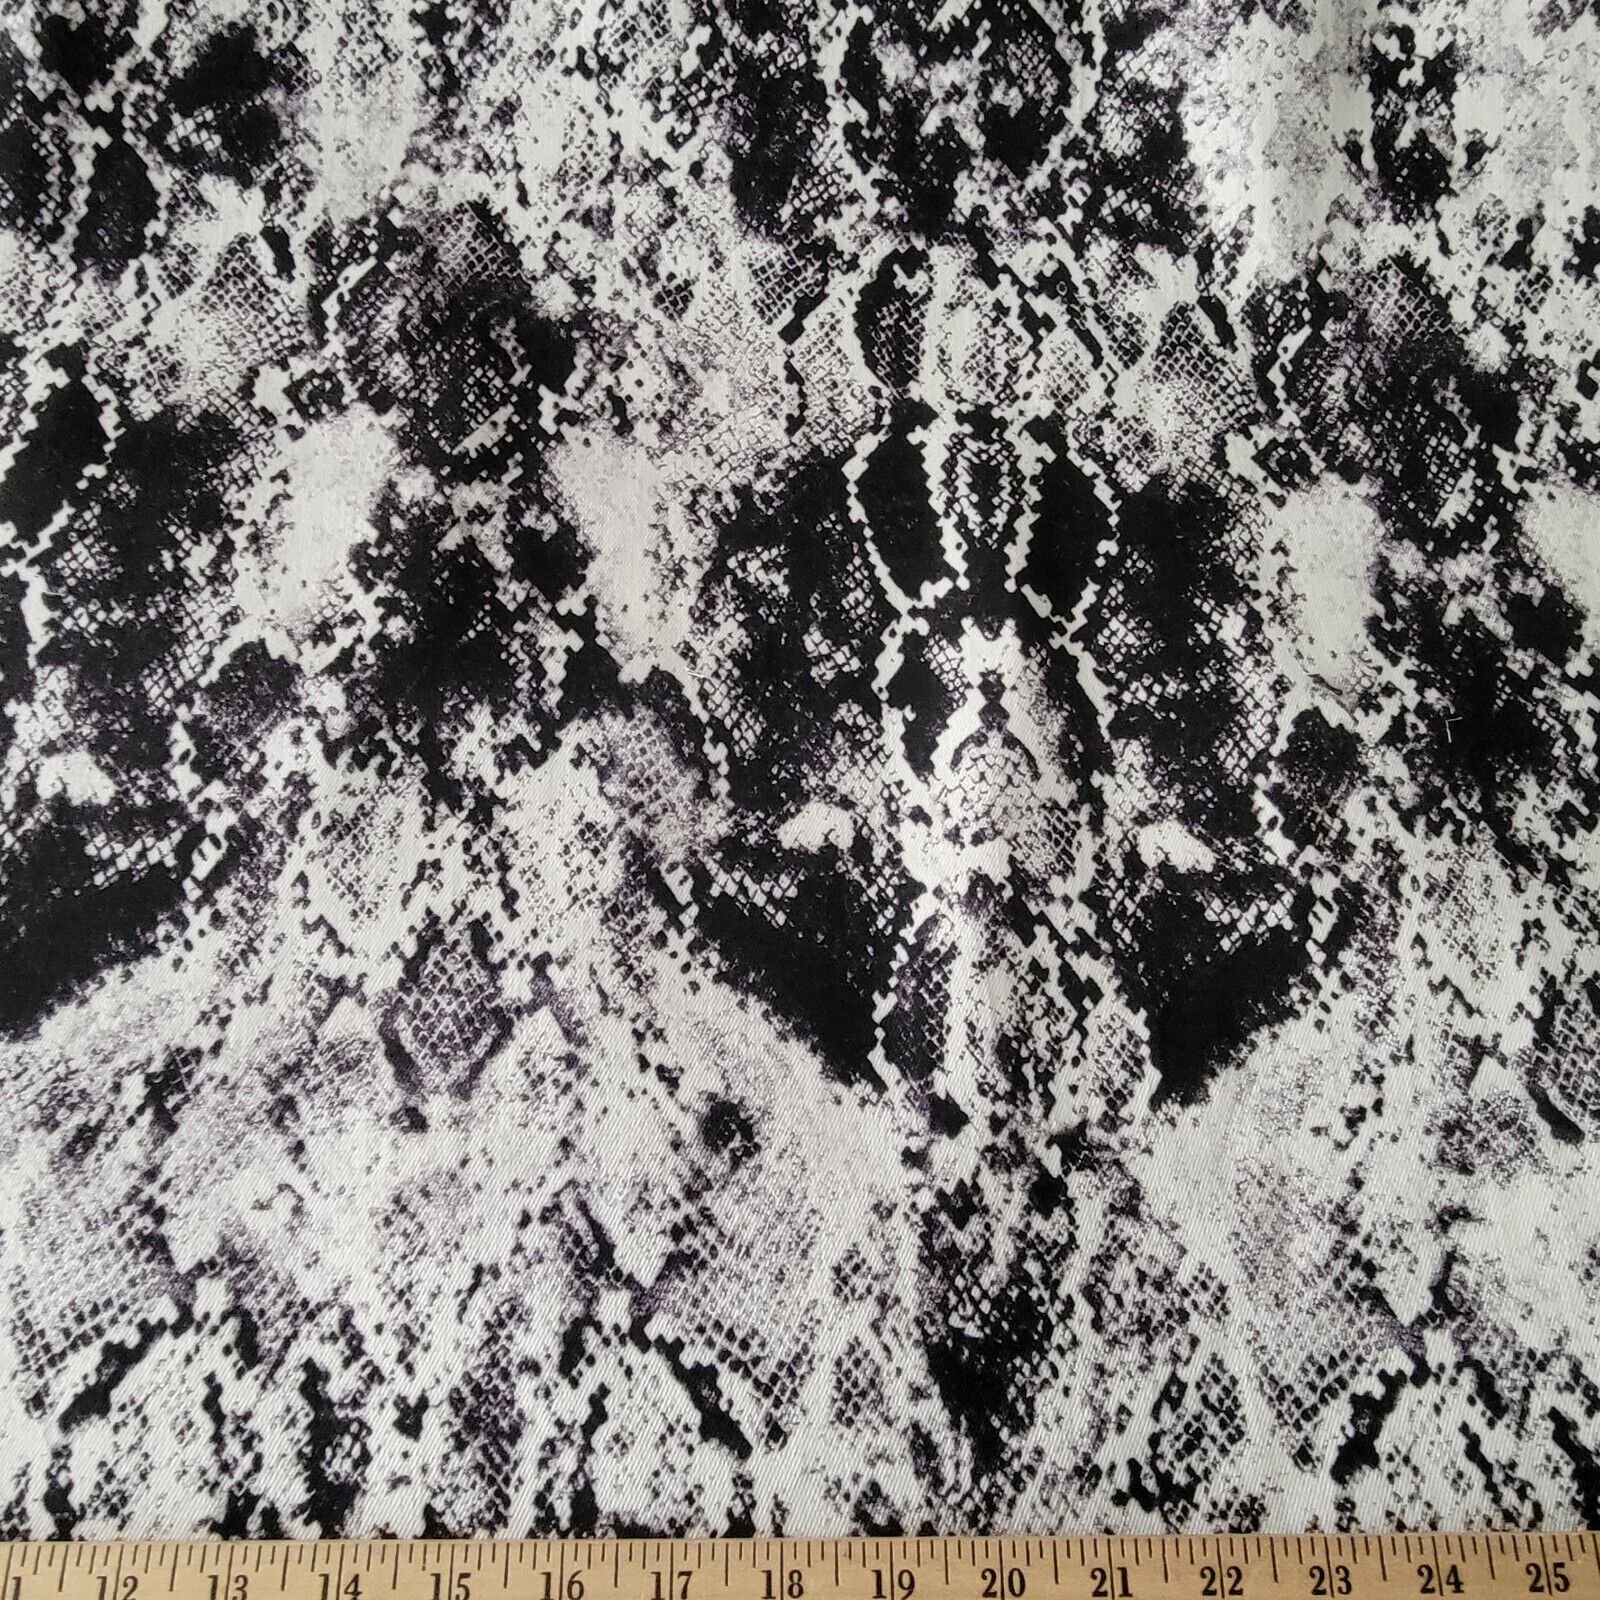 Black and White Snake Print